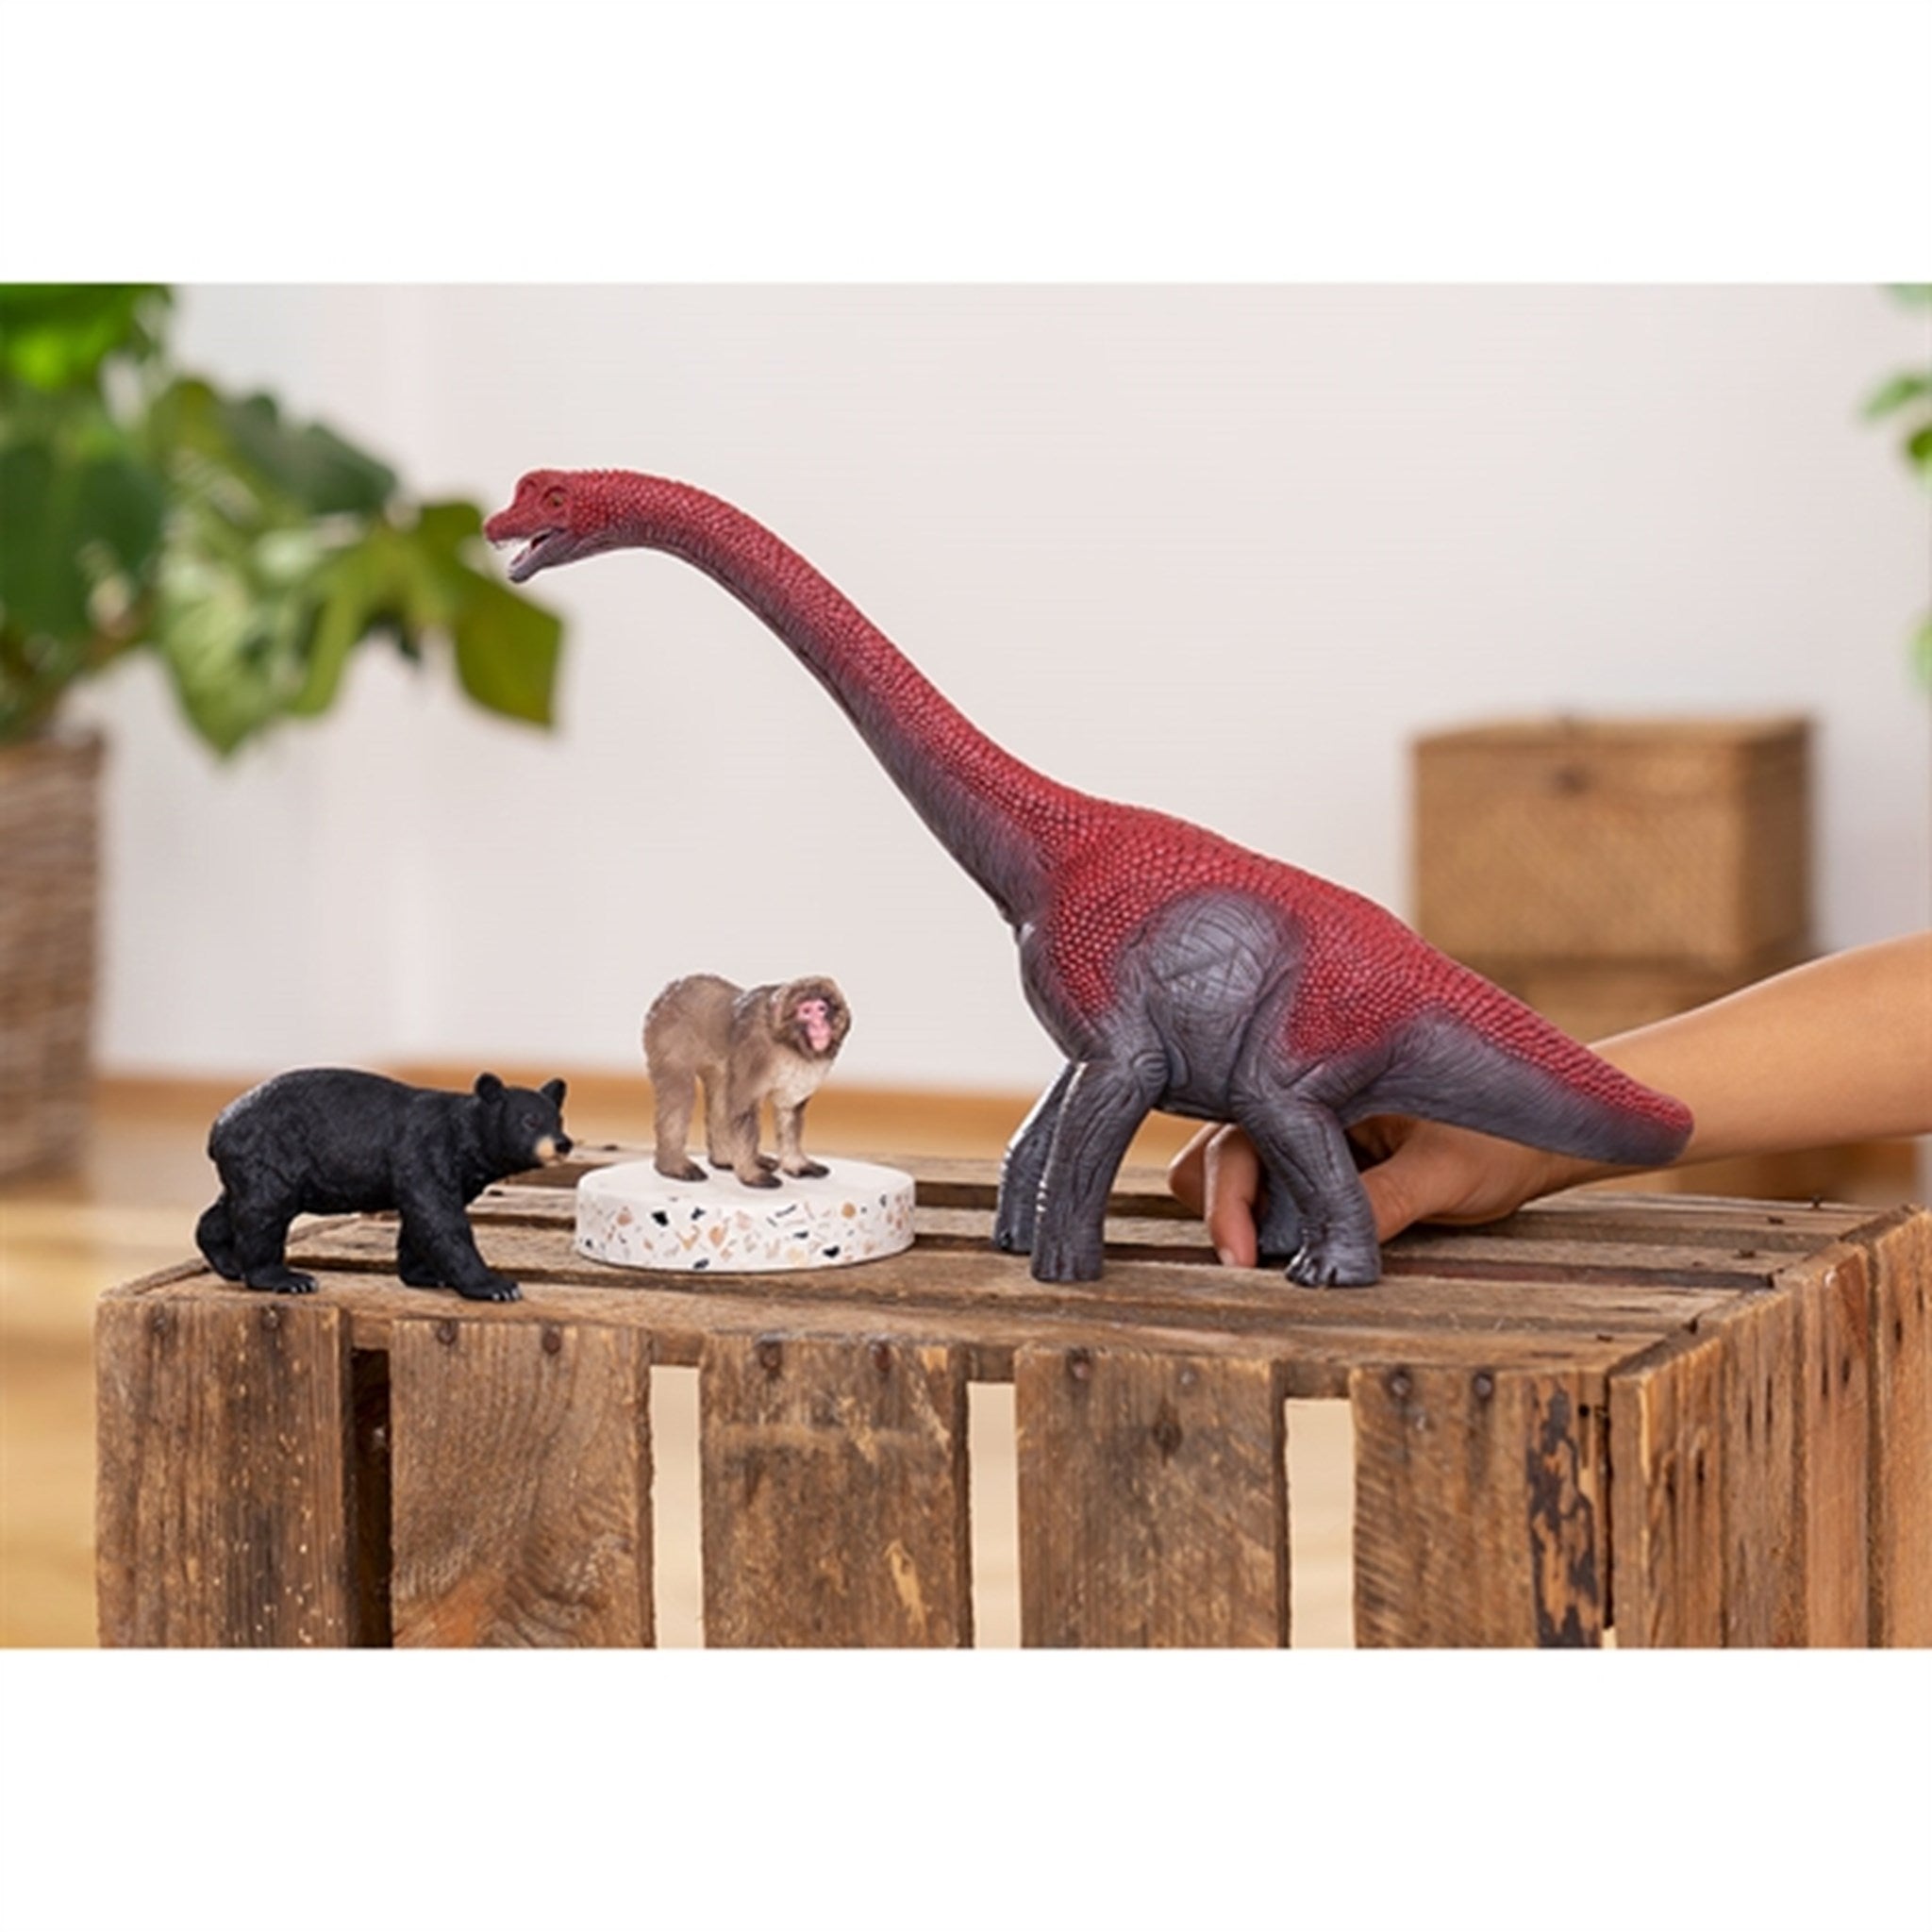 Schleich Dinosaurs Brachiosaurus 2